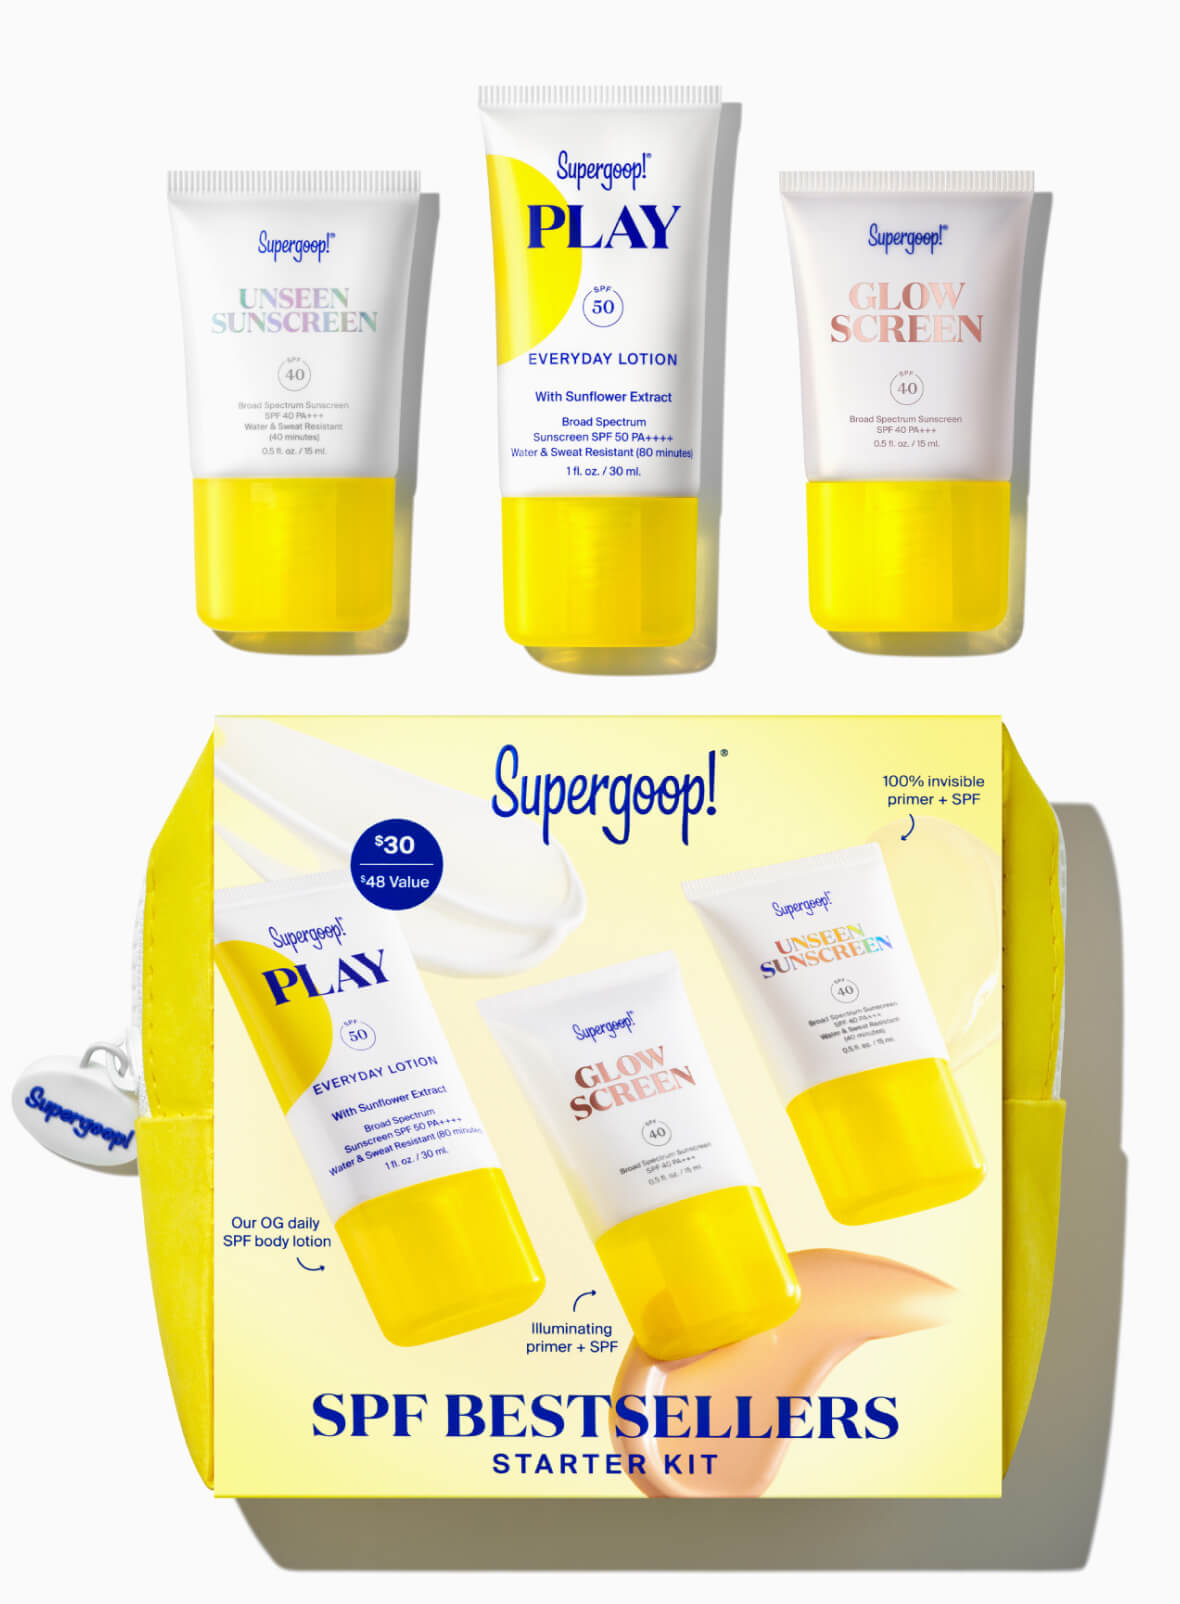 SPF Bestsellers Starter Kit Sunscreen | Supergoop!